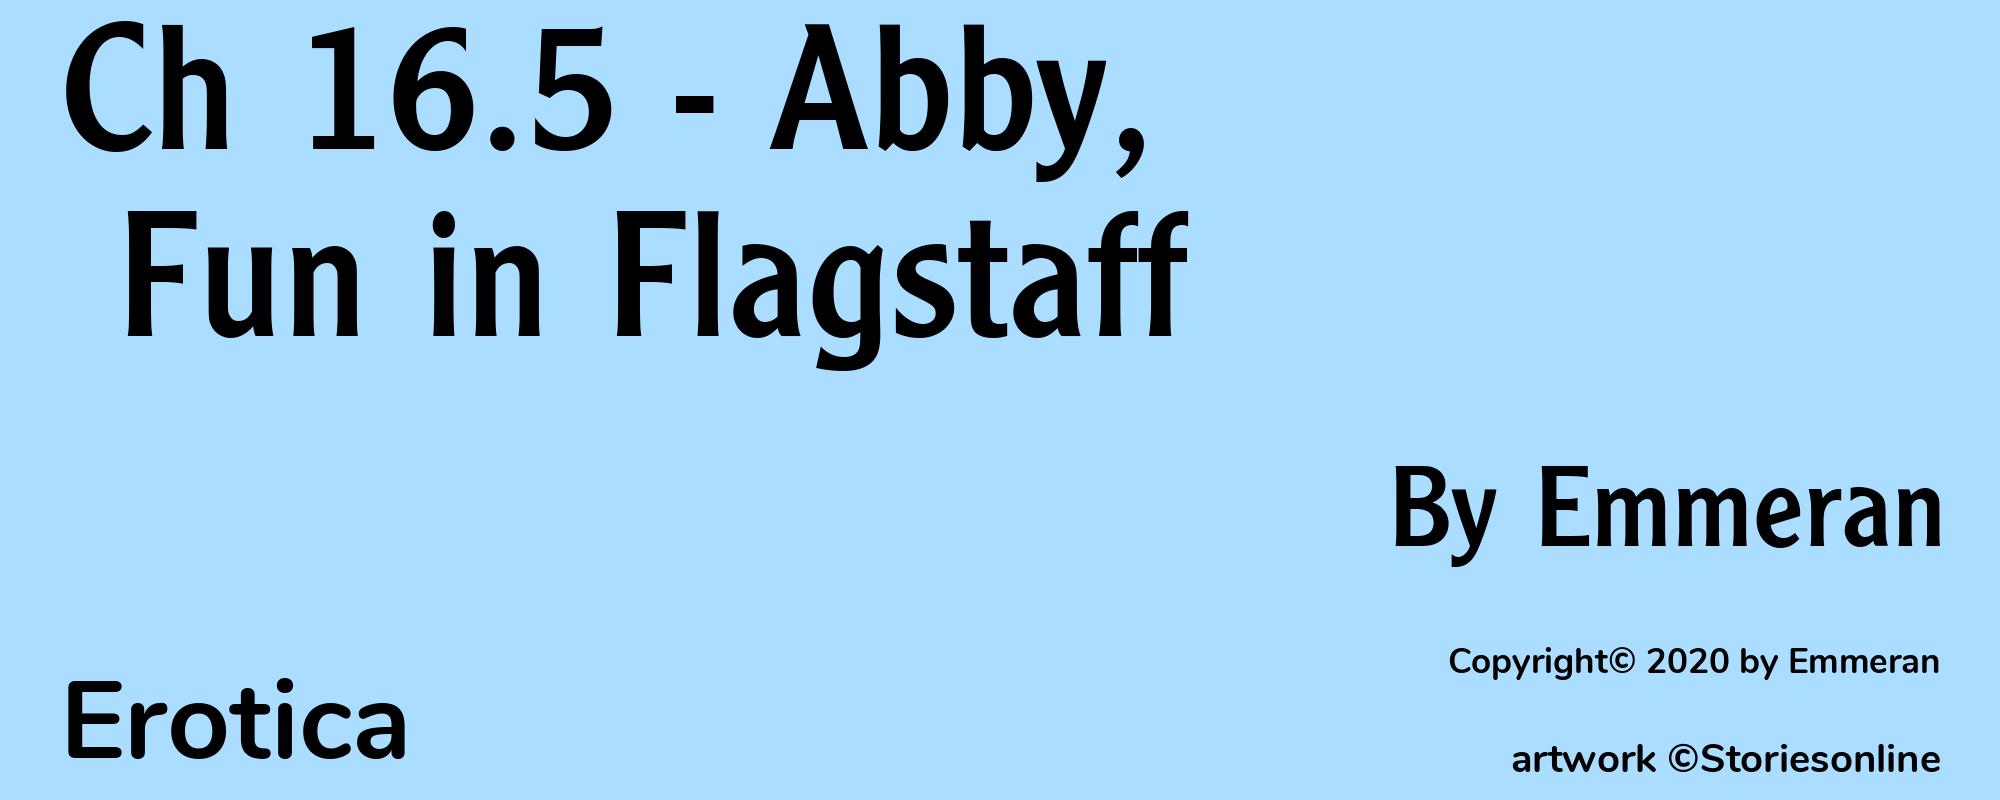 Ch 16.5 - Abby, Fun in Flagstaff - Cover